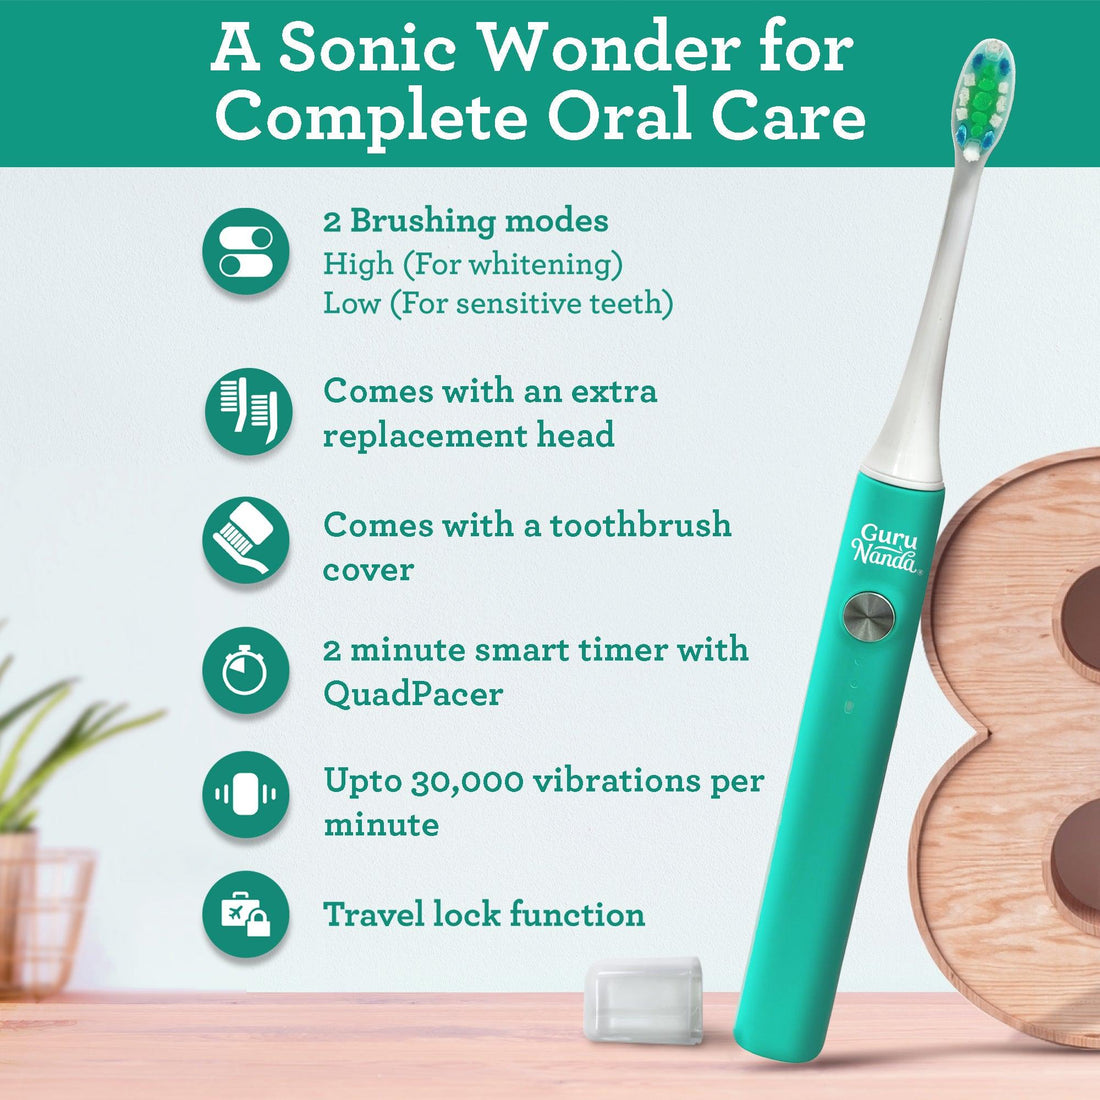 Sonic Cruiser Toothbrush With 2 Brush Heads - Teal - GuruNanda